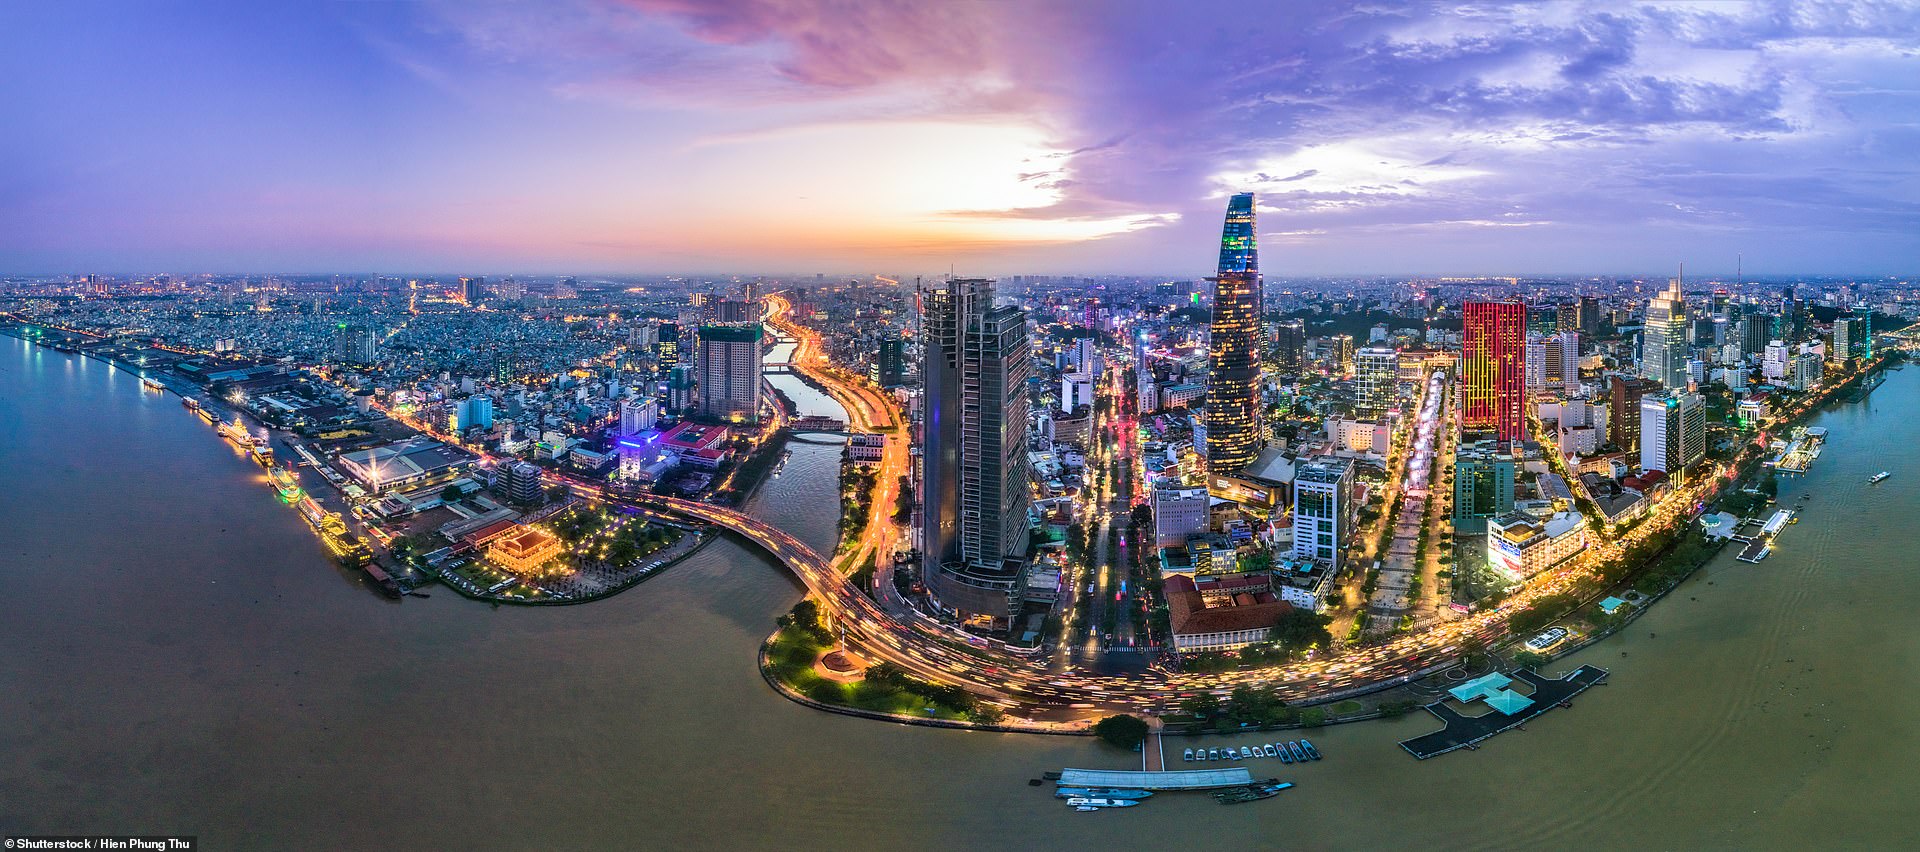 Sự phát triển của TPHCM không chỉ đem lại lợi ích cho nền kinh tế, mà nó còn đóng góp vào việc phát triển hình ảnh Việt Nam trên trường quốc tế. Những bức ảnh đẹp về thành phố này sẽ khiến bạn muốn khám phá những góc khuất mới của Việt Nam.